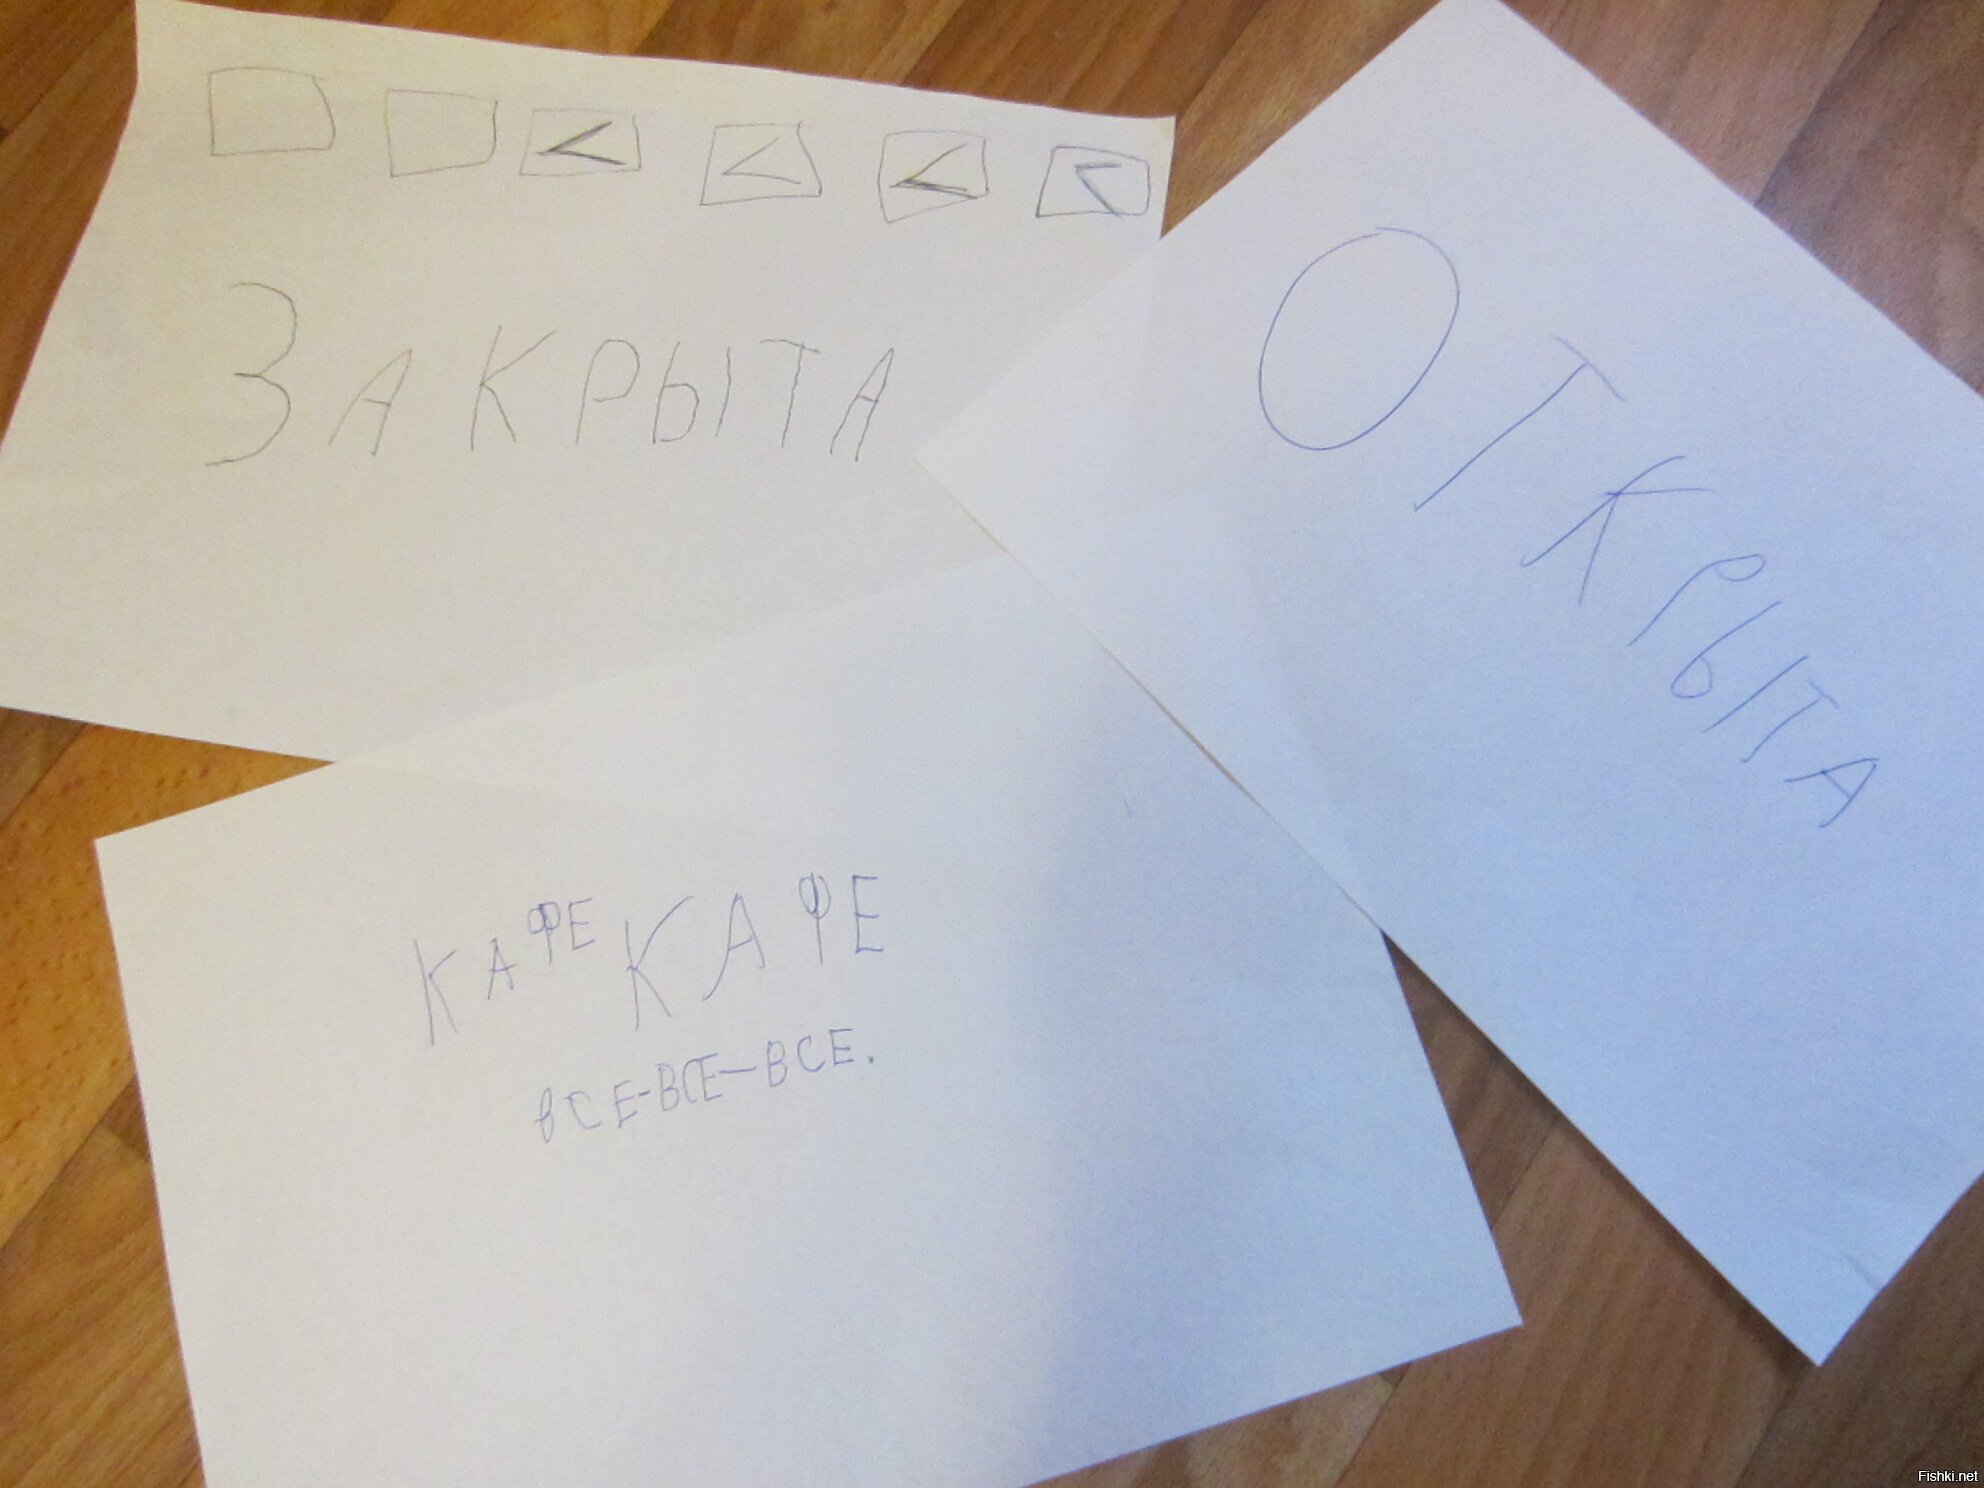 Дочка только писать научилась - придумывает новую игру)))))